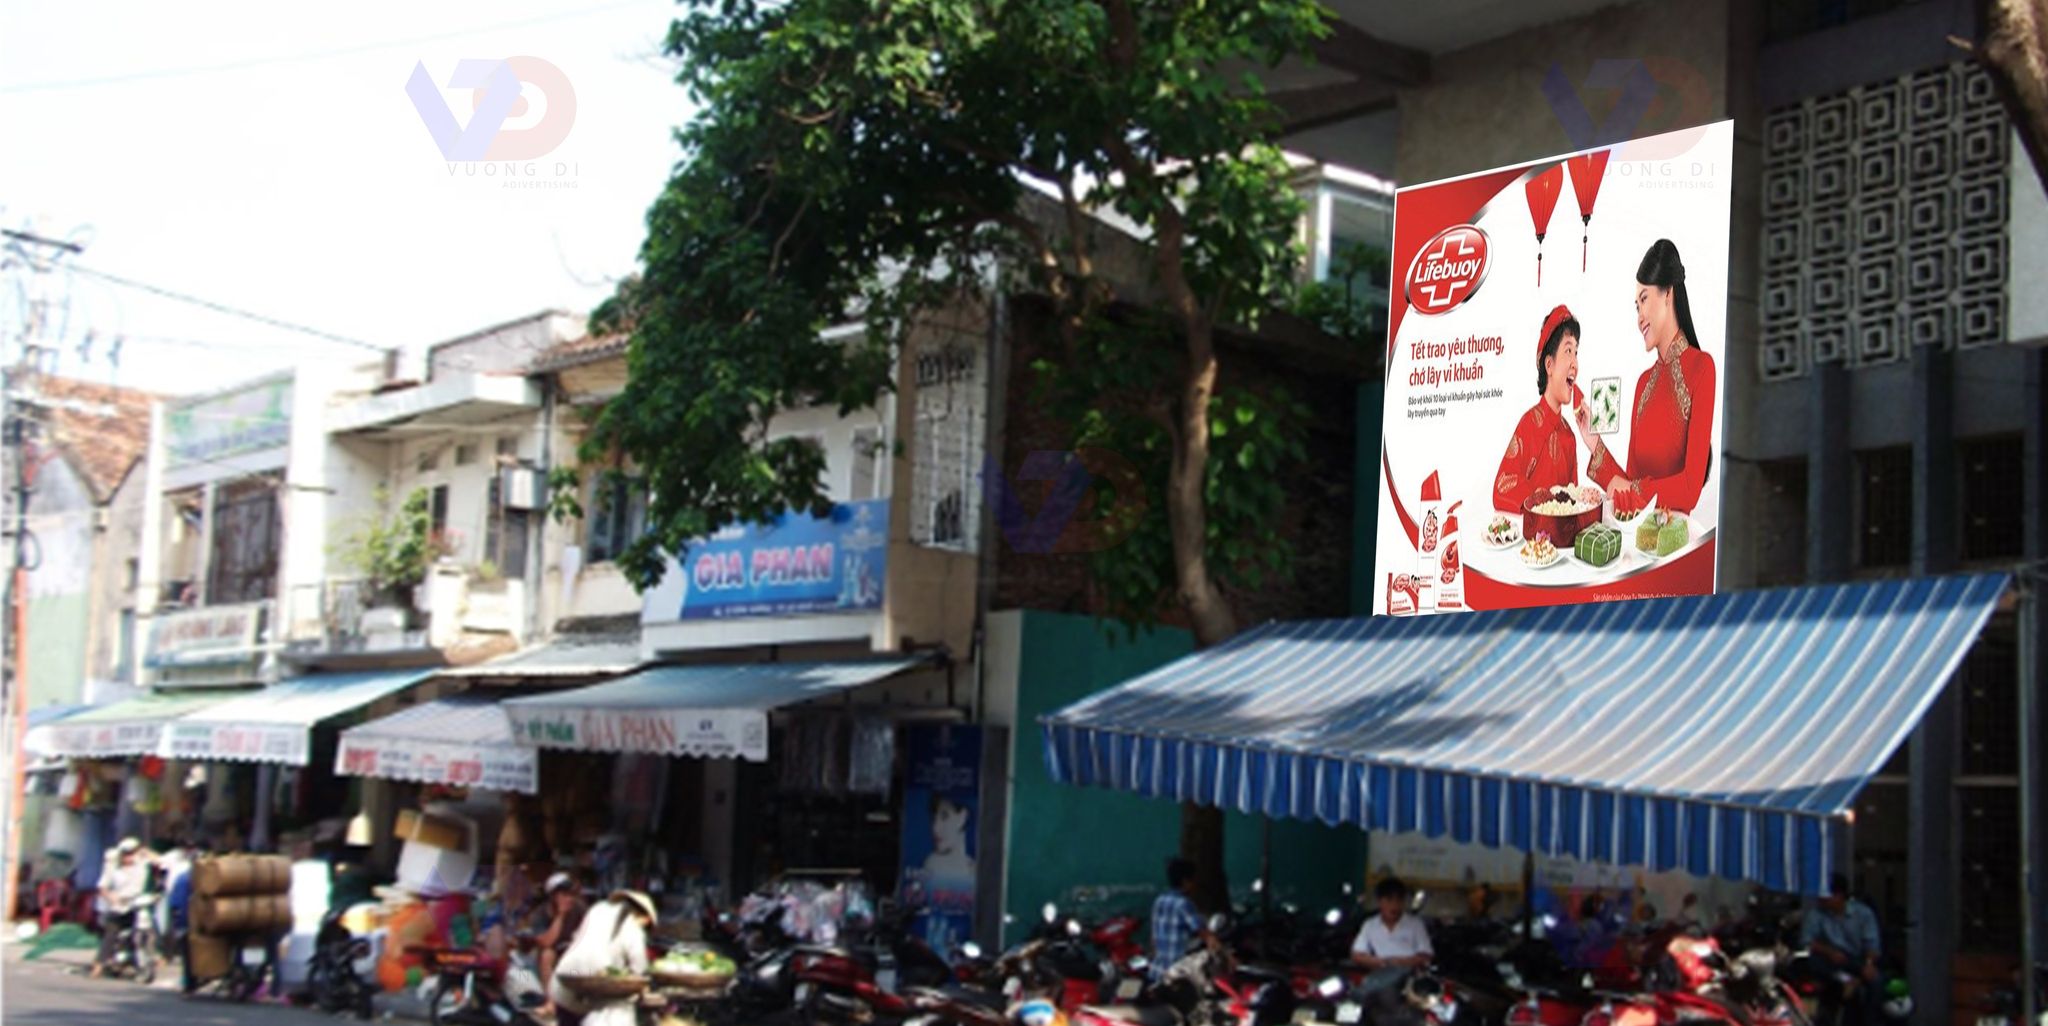 Bảng quảng cáo tại Chợ Hàn Đà Nẵng, Quận Hải Châu, Đà Nẵng